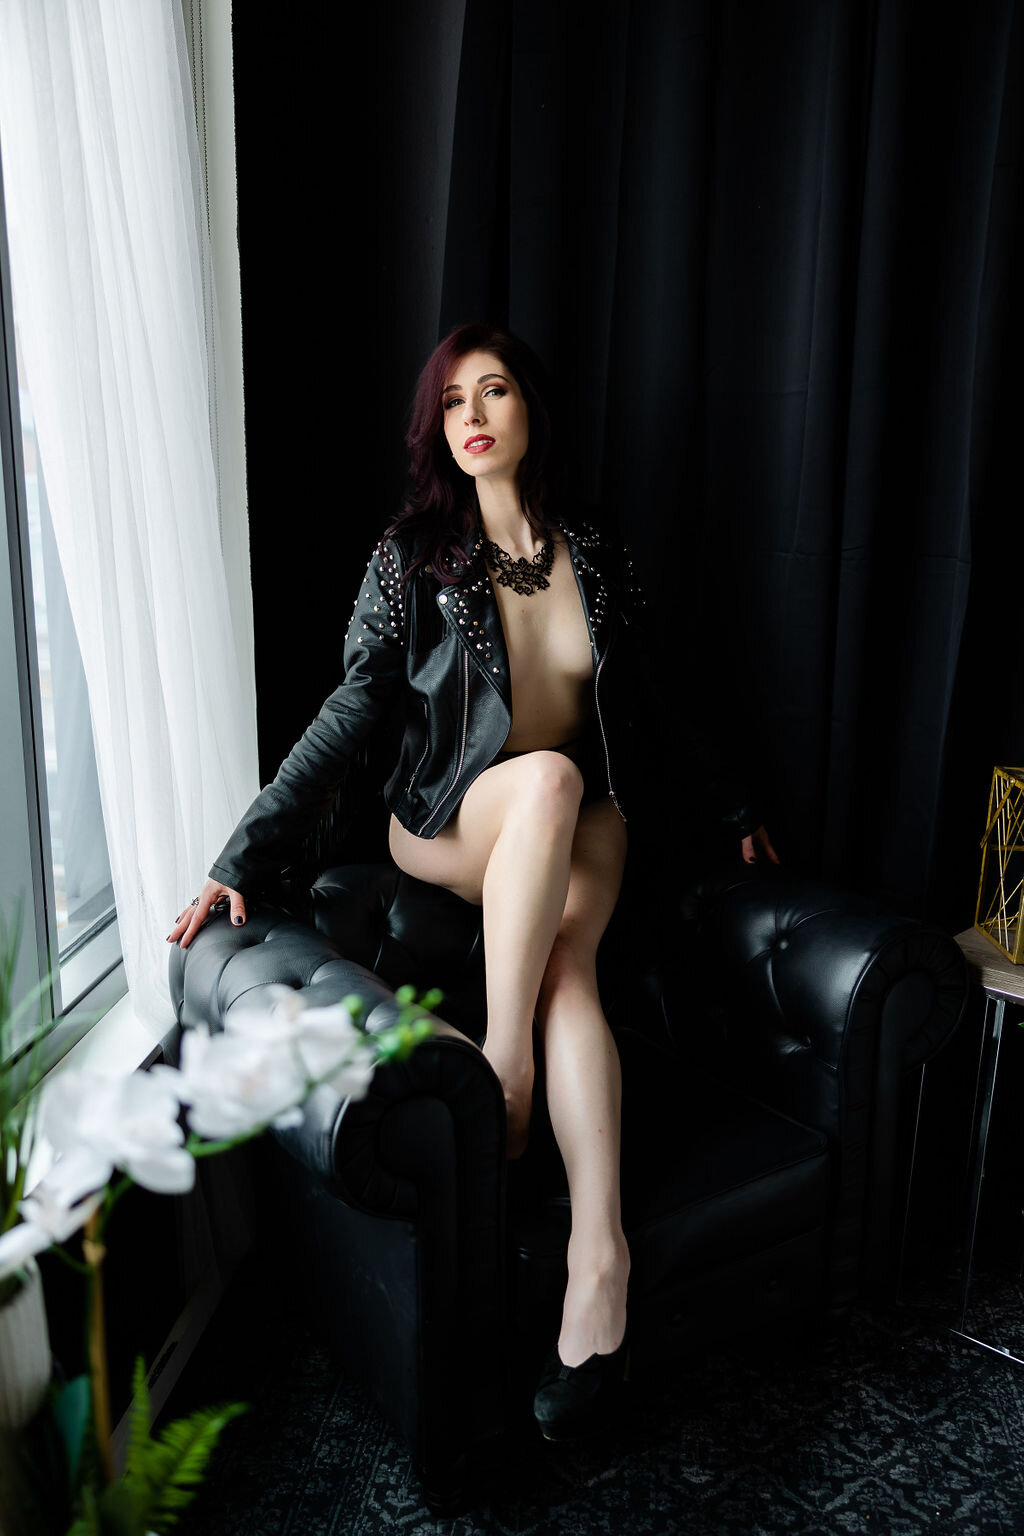 leather-jacket-seated-window-boudoir-pose